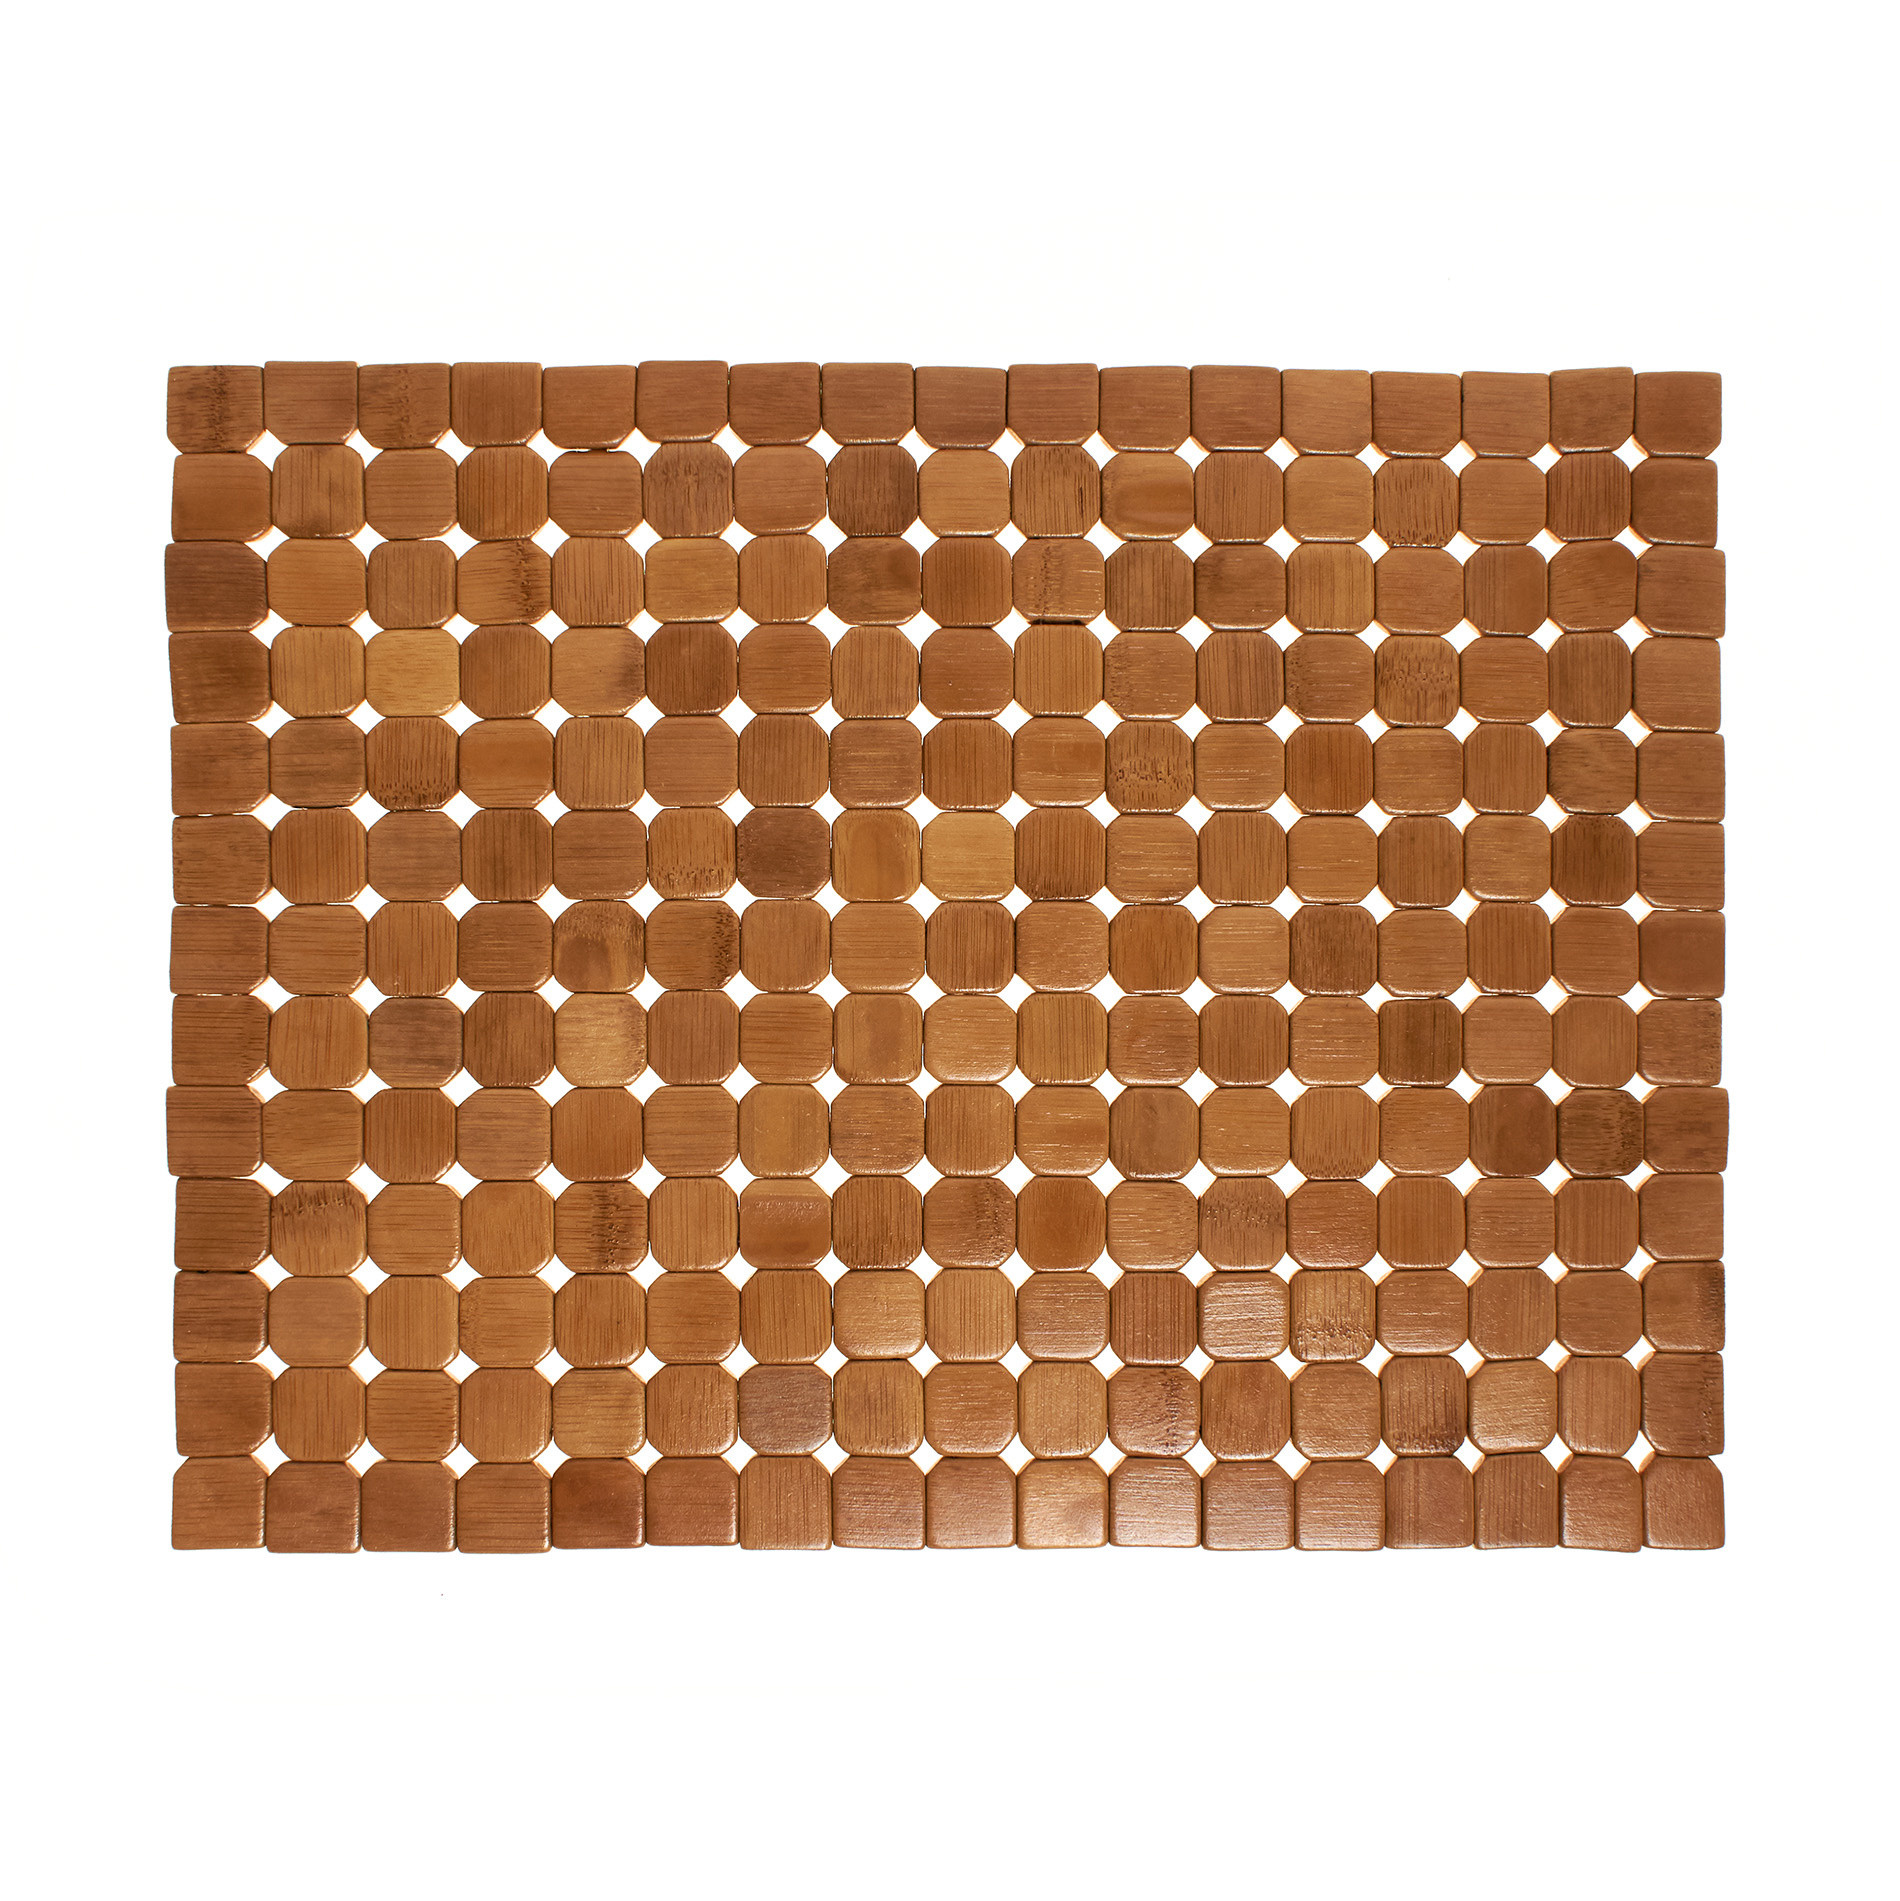 Расписной бамбуковый коврик для столовых приборов Coincasa, светло-коричневый расписной бамбуковый коврик для столовых приборов coincasa светло коричневый